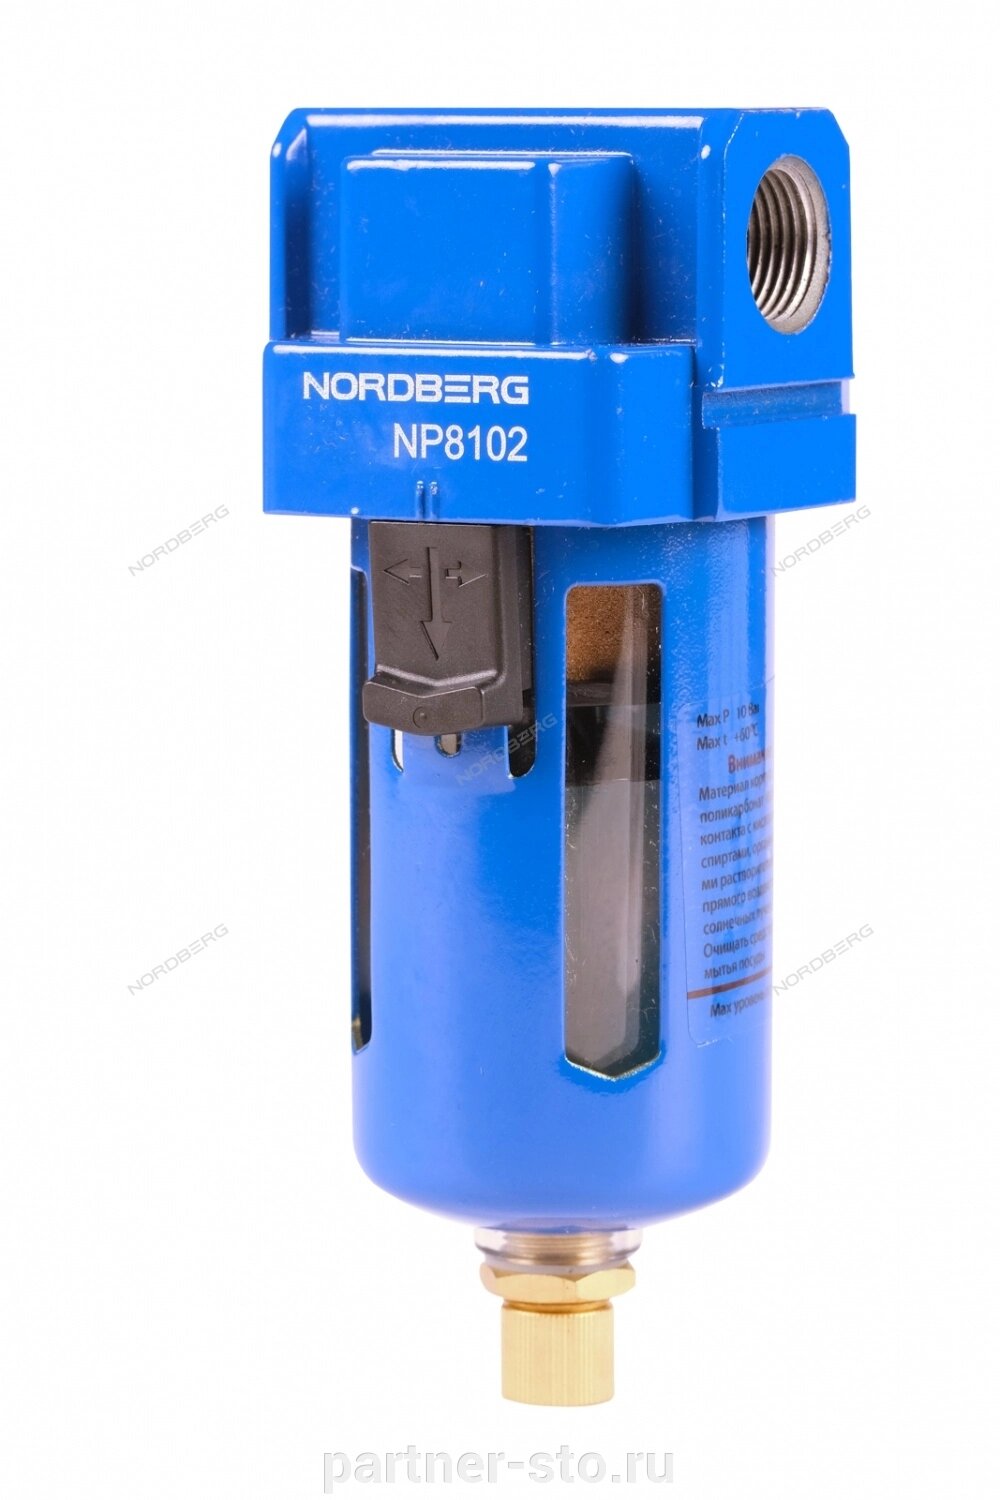 Фильтр воздушный, 1/4", 1500 л/мин NORDBERG NP8102 от компании Партнёр-СТО - оборудование и инструмент для автосервиса и шиномонтажа. - фото 1